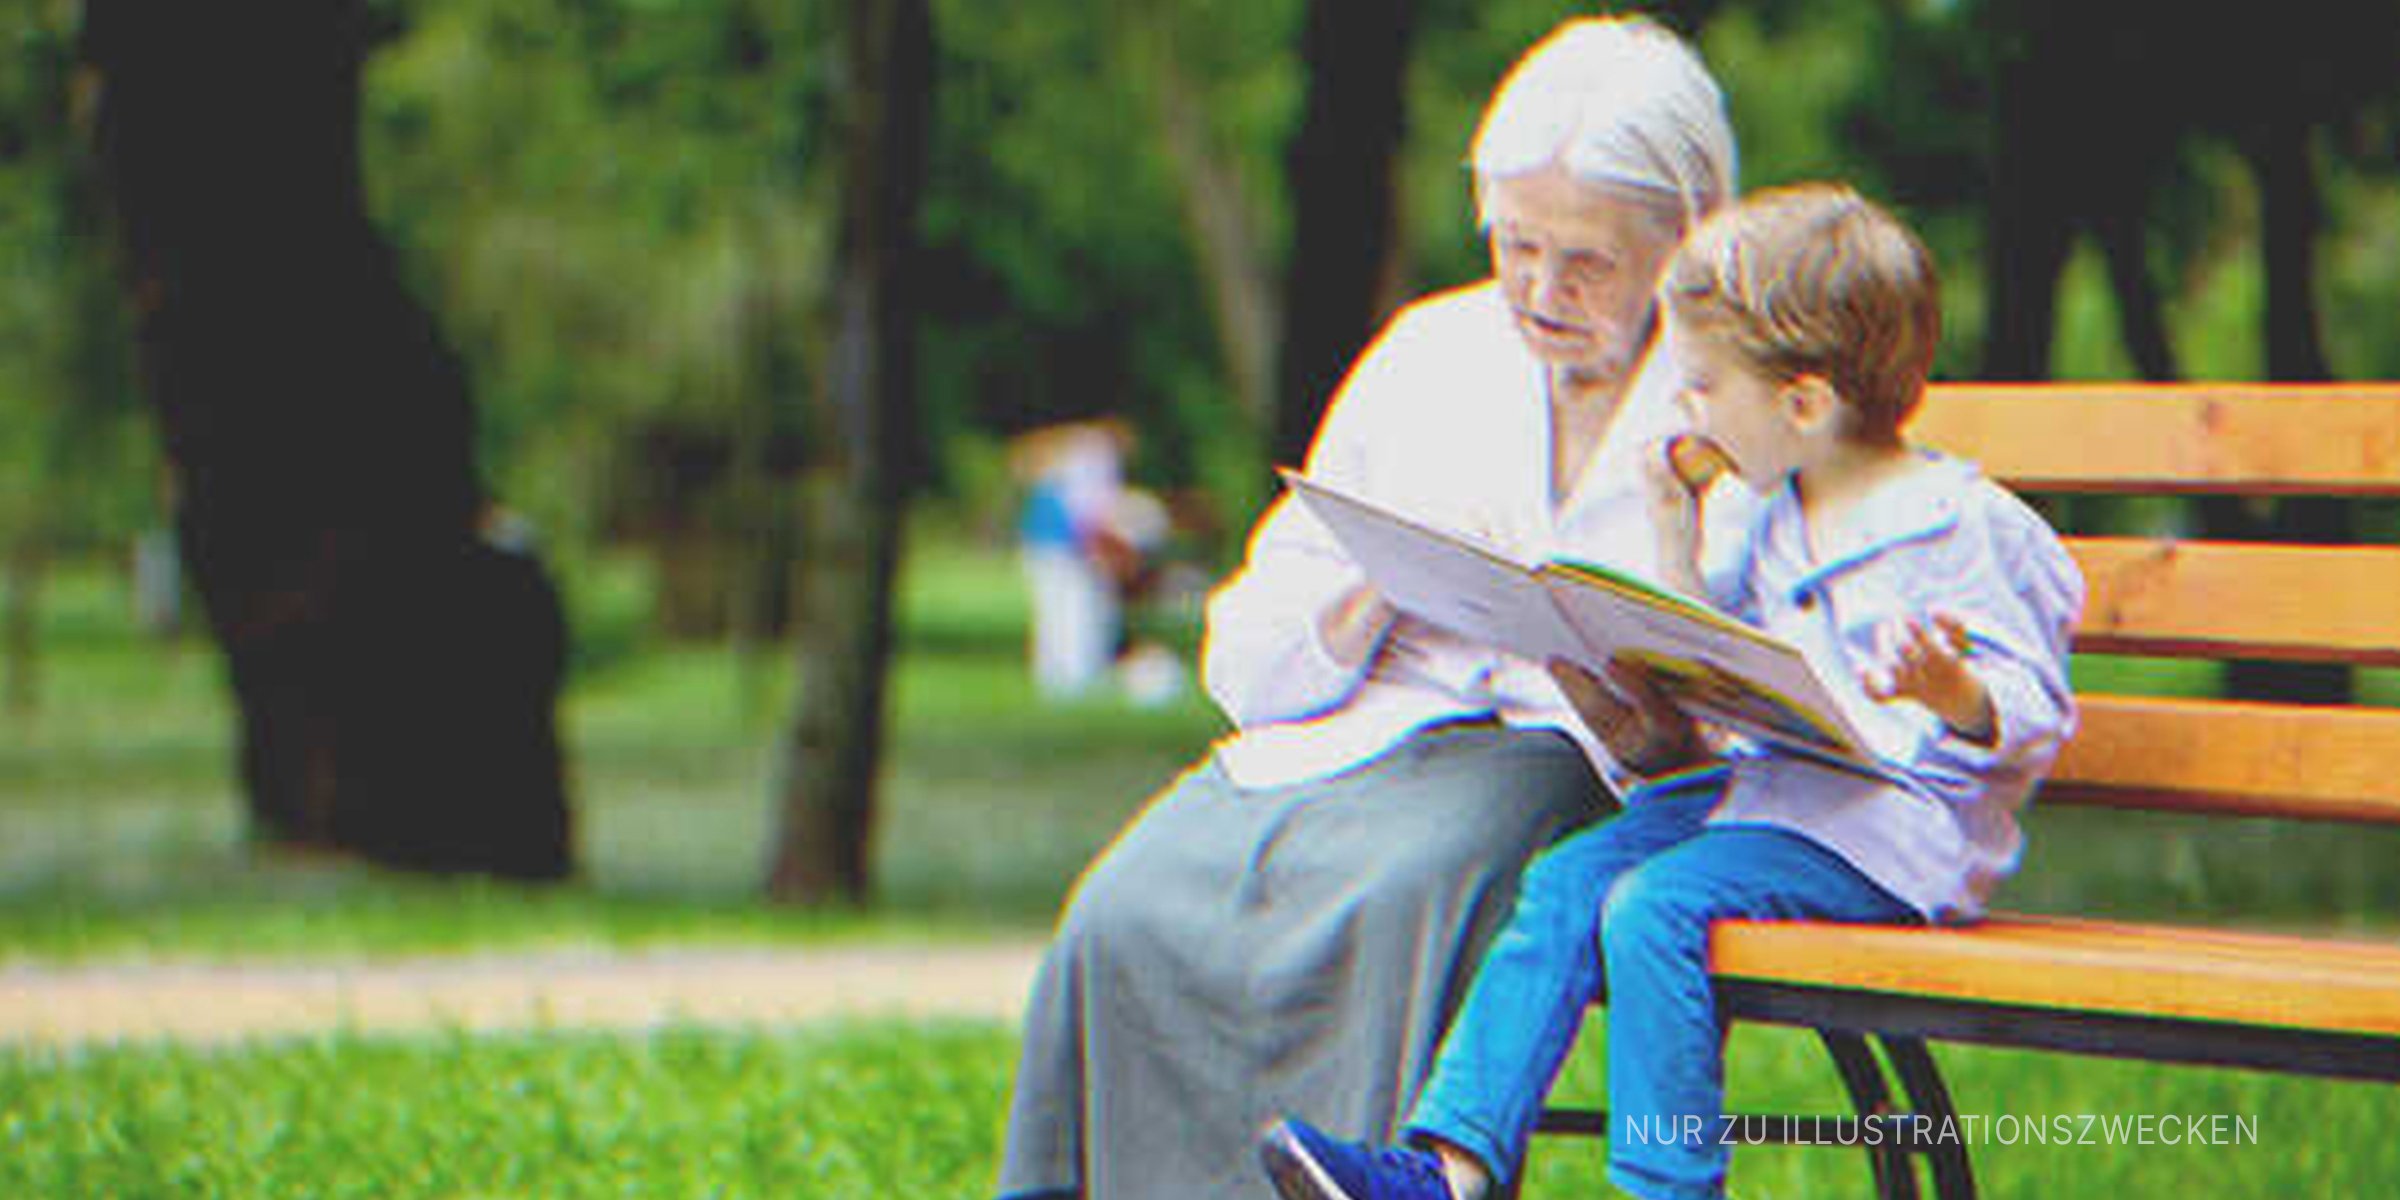 Großmutter und Enkel auf der Parkbank. | Quelle: Shutterstock